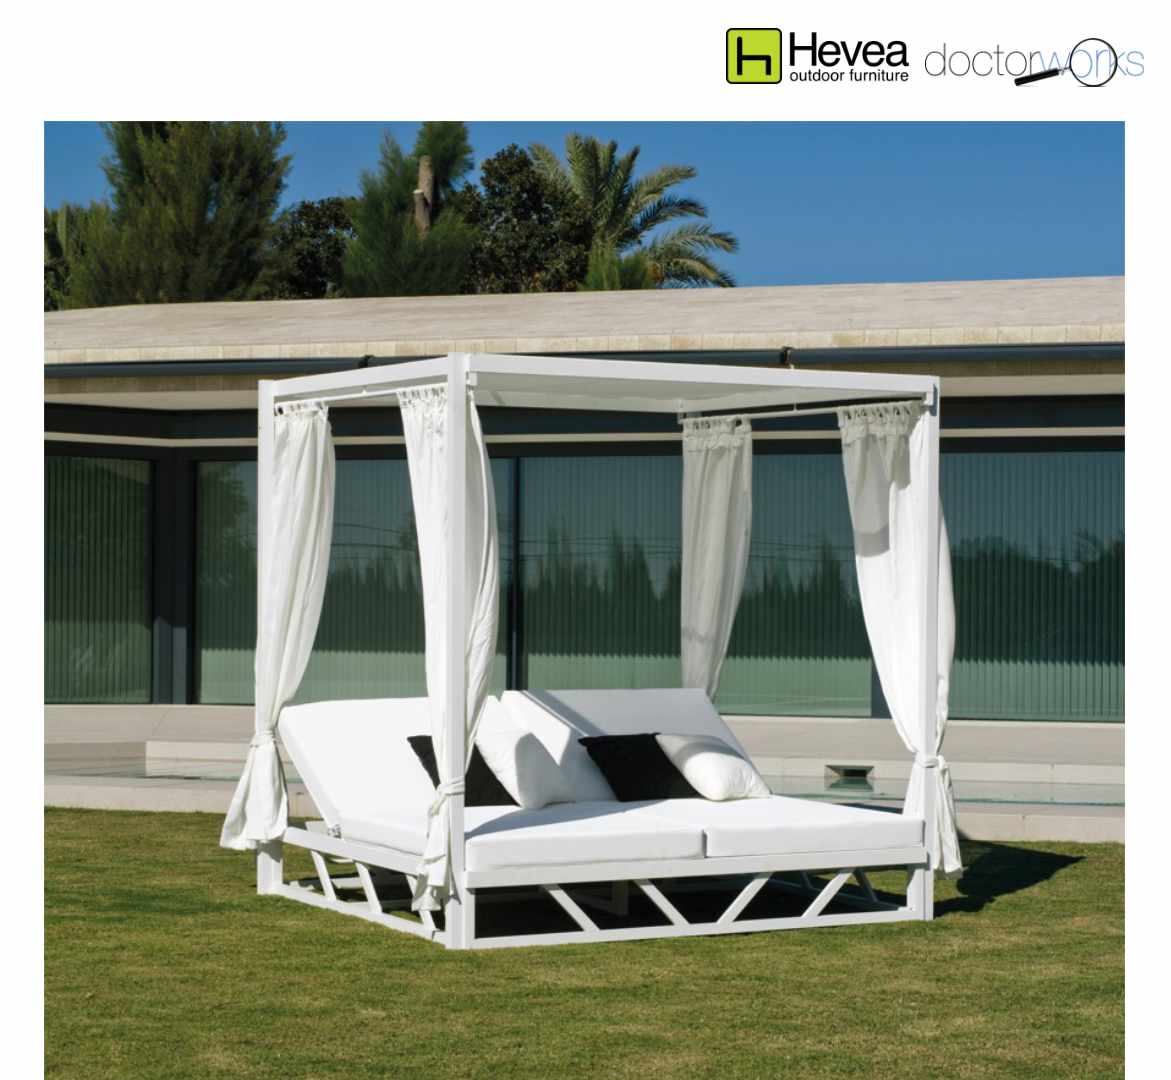 Cama balinesa Hevea Lux 210 estructura aluminio blanco, tela, cortinas y toldos blancos